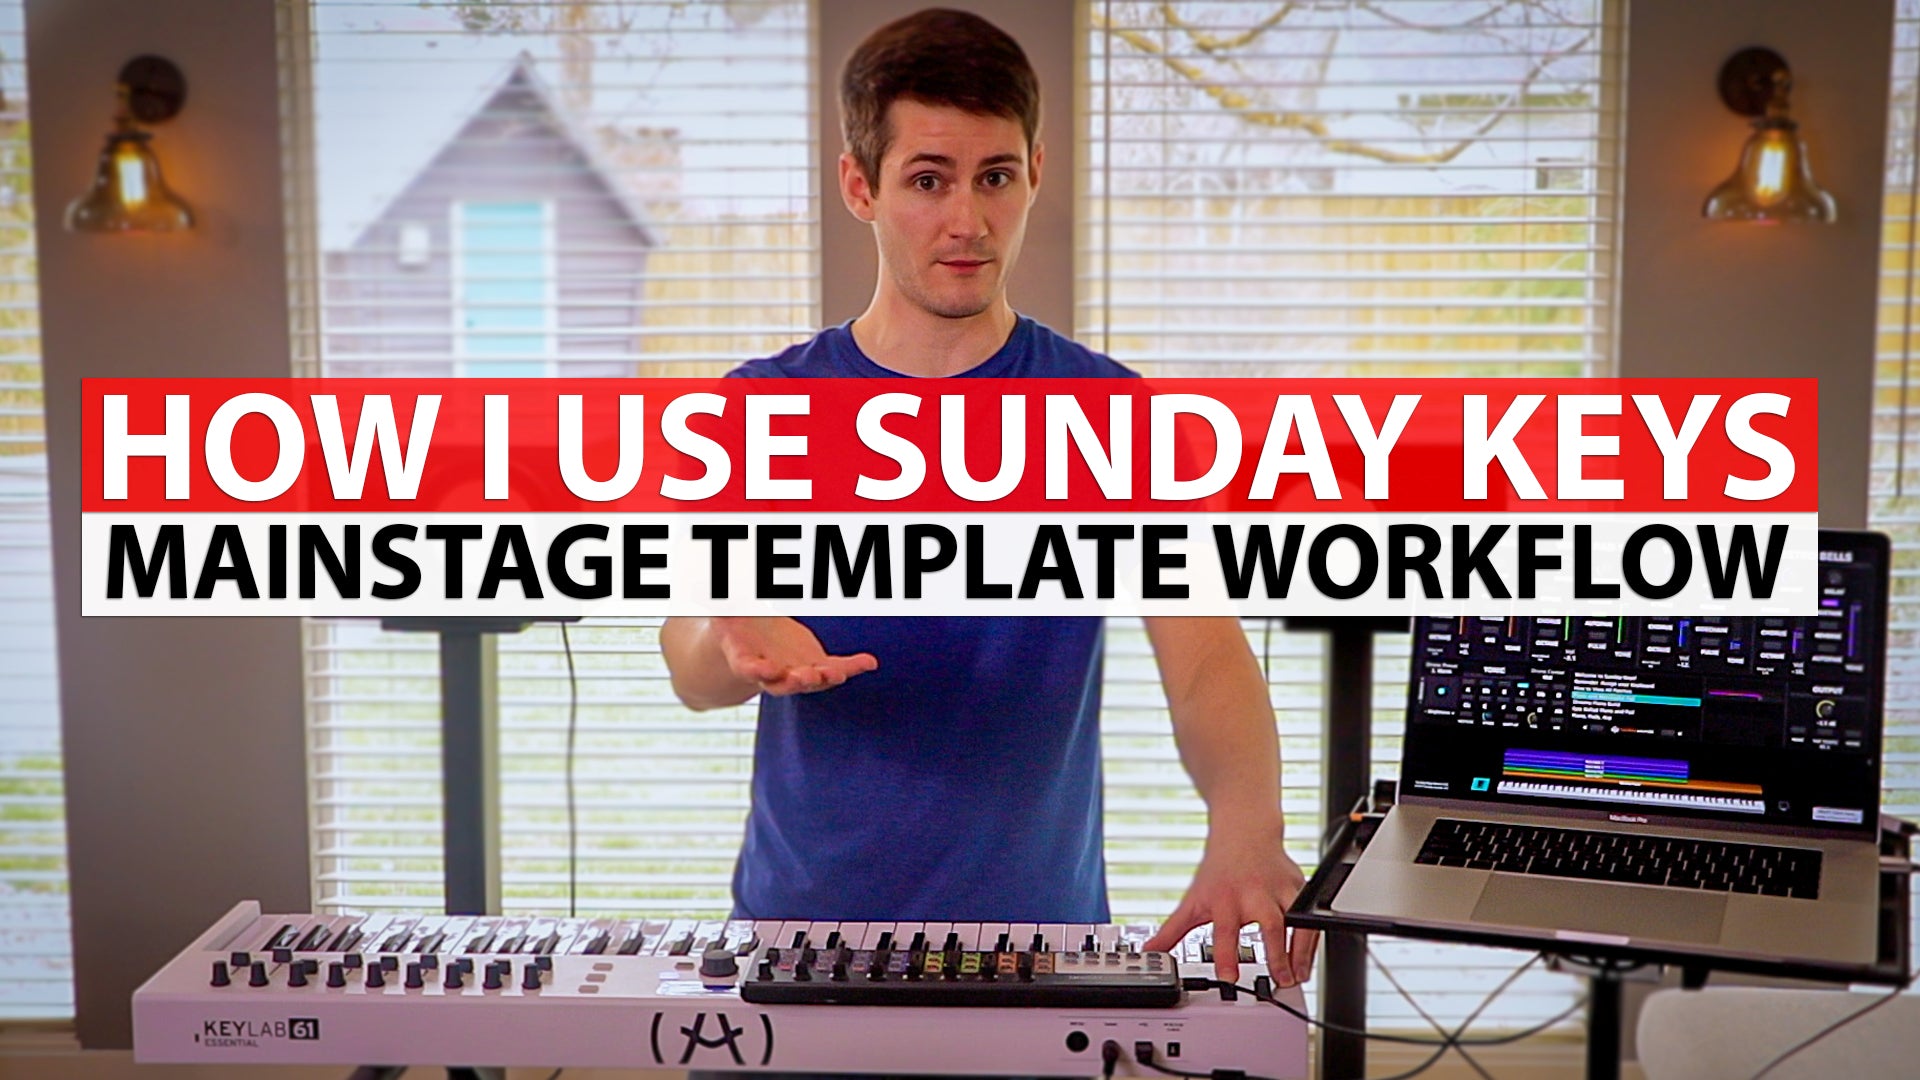 Ryan's Sunday Keys MainStage Template Workflow